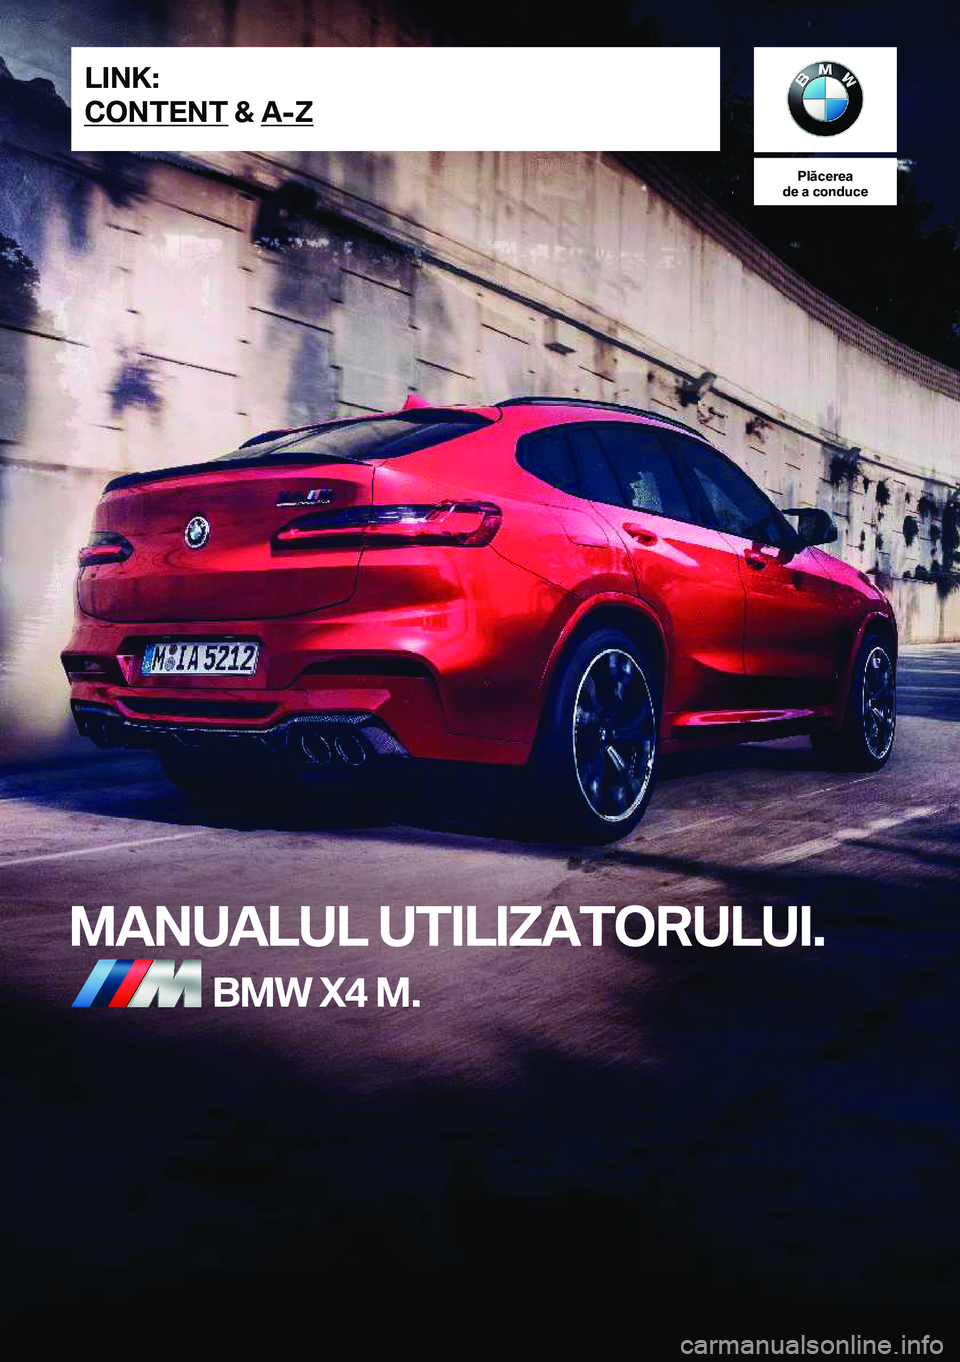 BMW X4 M 2020  Ghiduri De Utilizare (in Romanian) �P�l�ă�c�e�r�e�a
�d�e��a��c�o�n�d�u�c�e
�M�A�N�U�A�L�U�L��U�T�I�L�I�Z�A�T�O�R�U�L�U�I�.�B�M�W��X�4��M�.�L�I�N�K�:
�C�O�N�T�E�N�T��&��A�-�Z�O�n�l�i�n�e��E�d�i�t�i�o�n��f�o�r��P�a�r�t��n�o�.